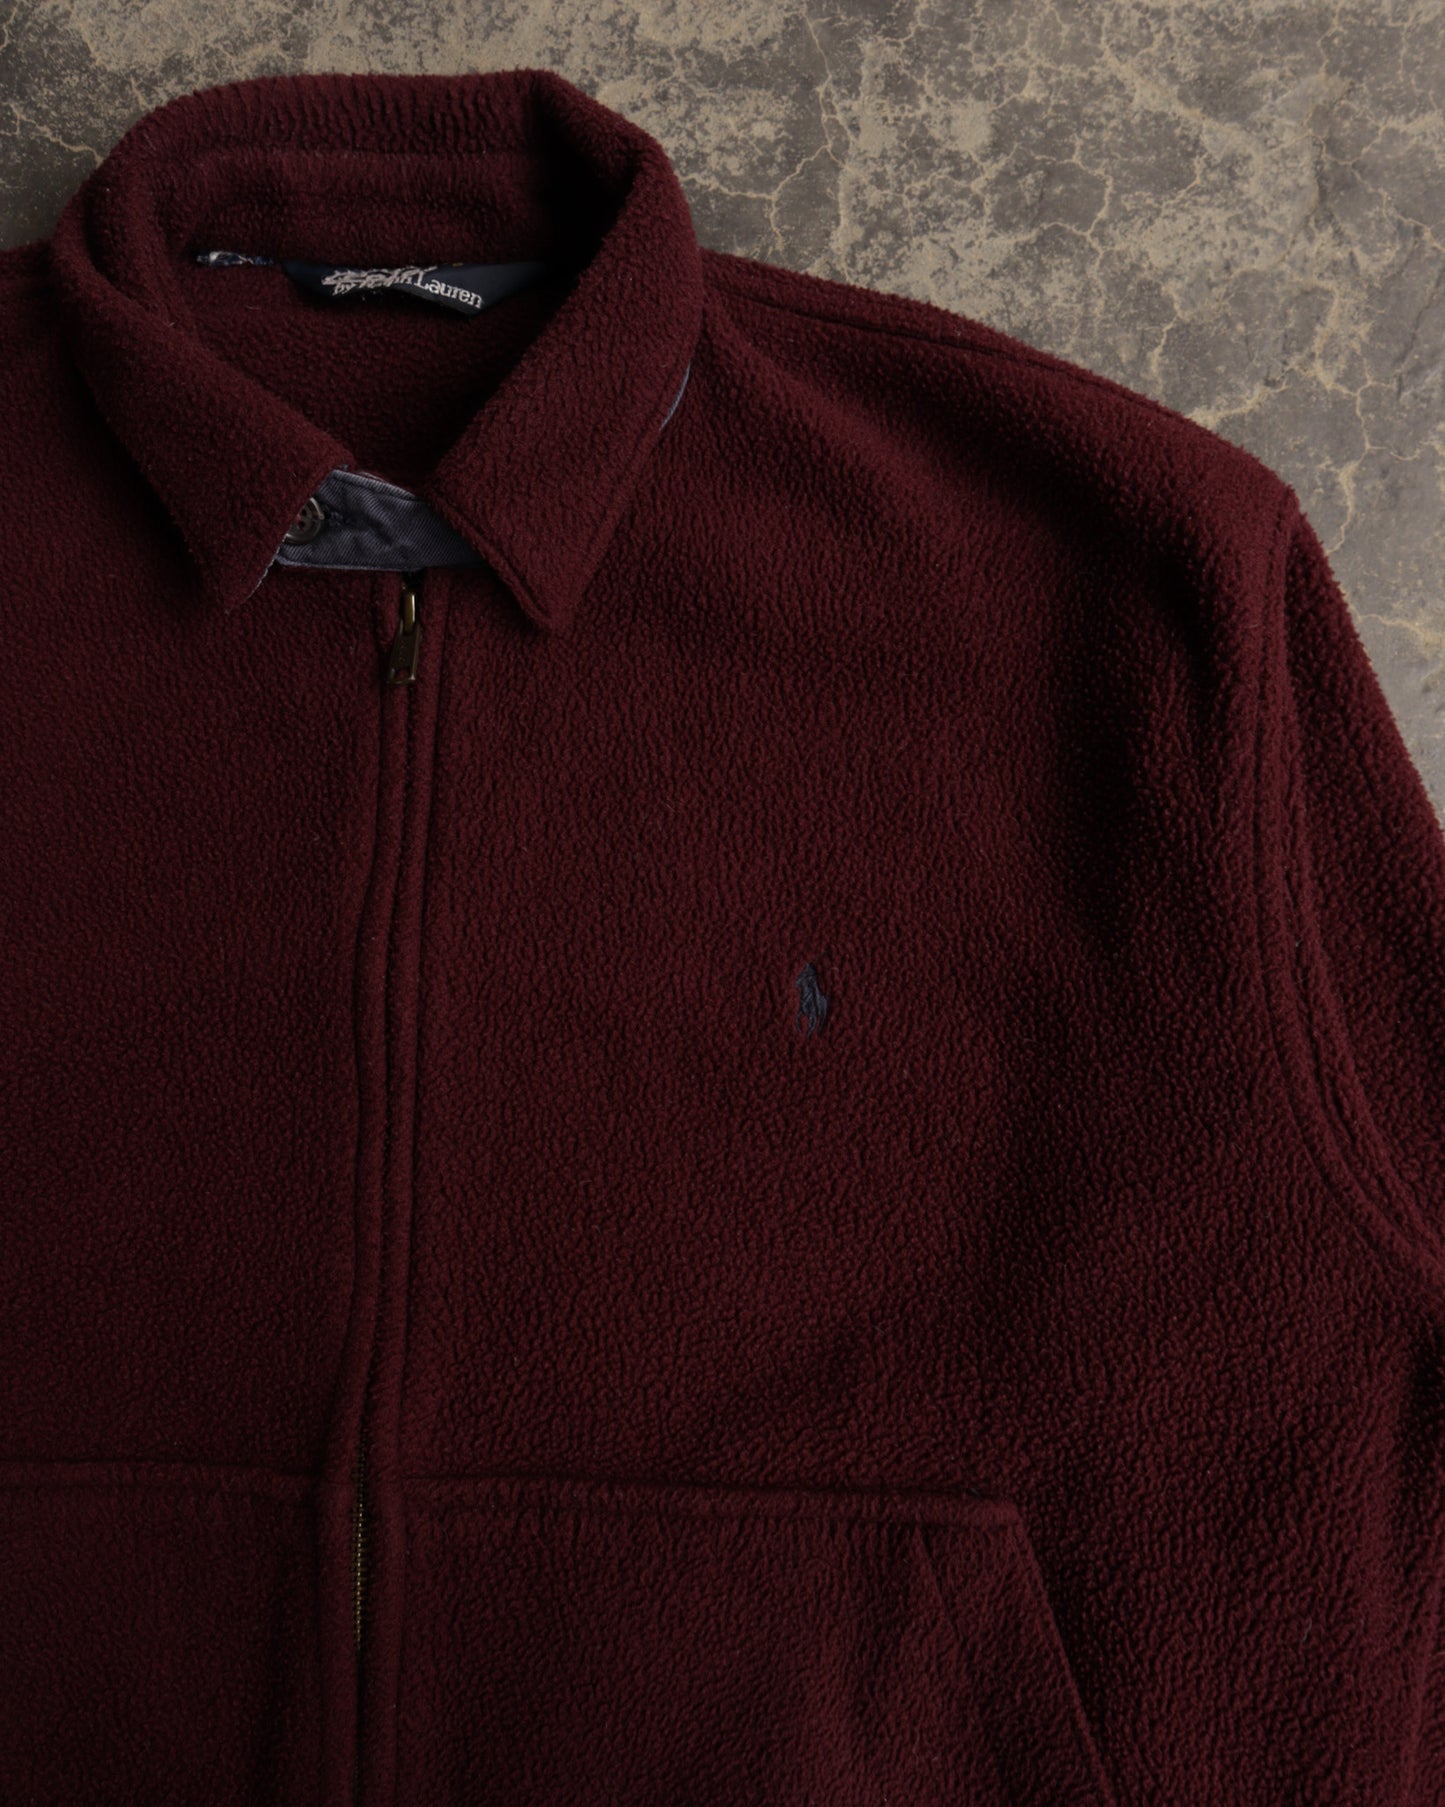 90s Polo Ralph Lauren Burgundy Fleece Sweatshirt - M